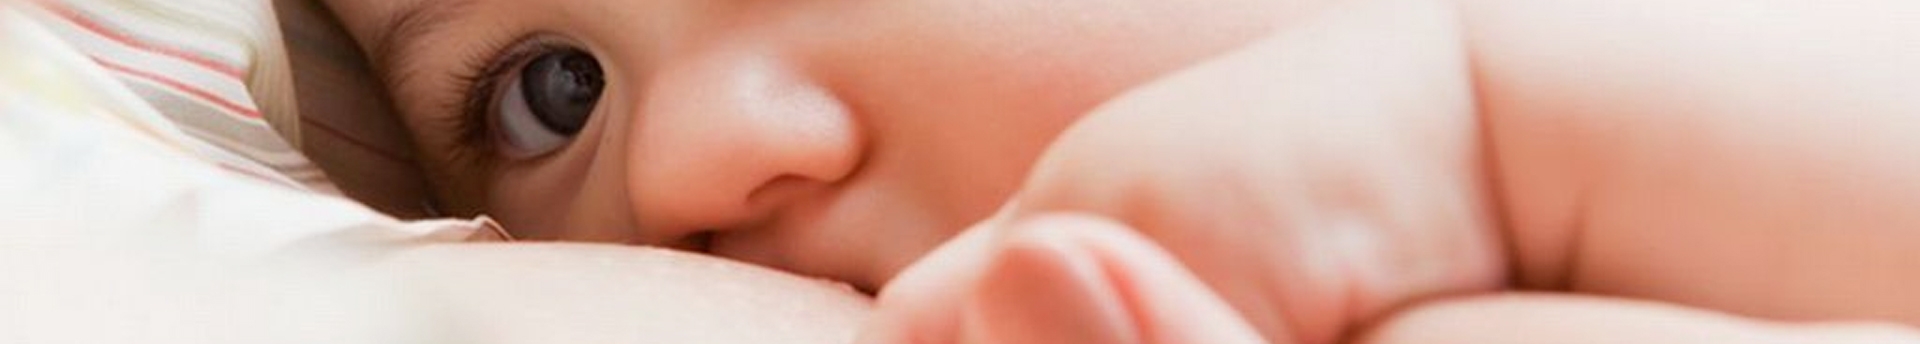 O leite materno ajuda no desenvolvimento cerebral e cognitivo